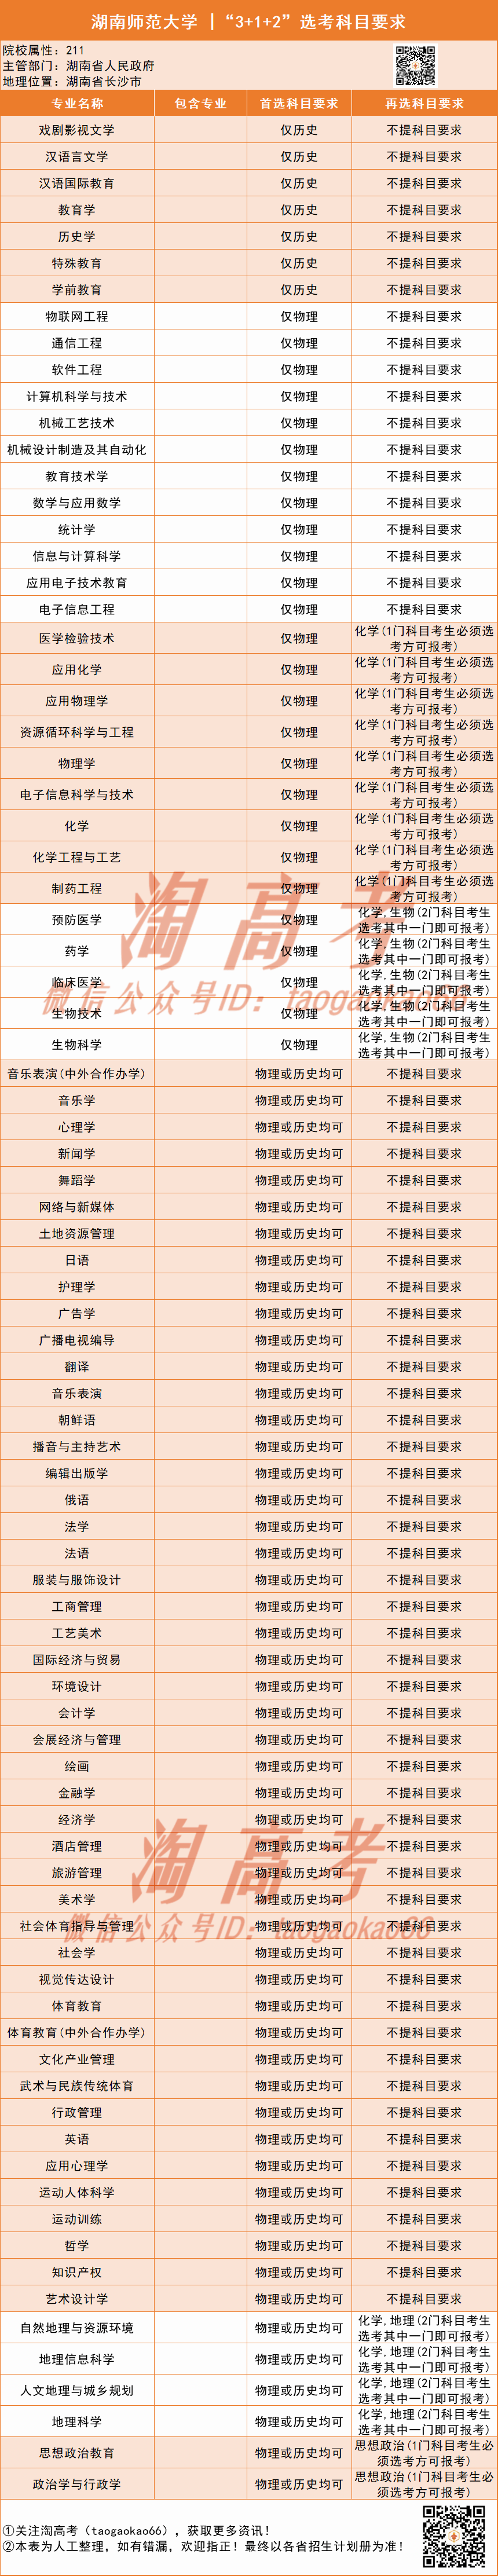 2020湖南省高考排名_学霸丨湖南2020高考单科优秀名单,可增加一次投档机